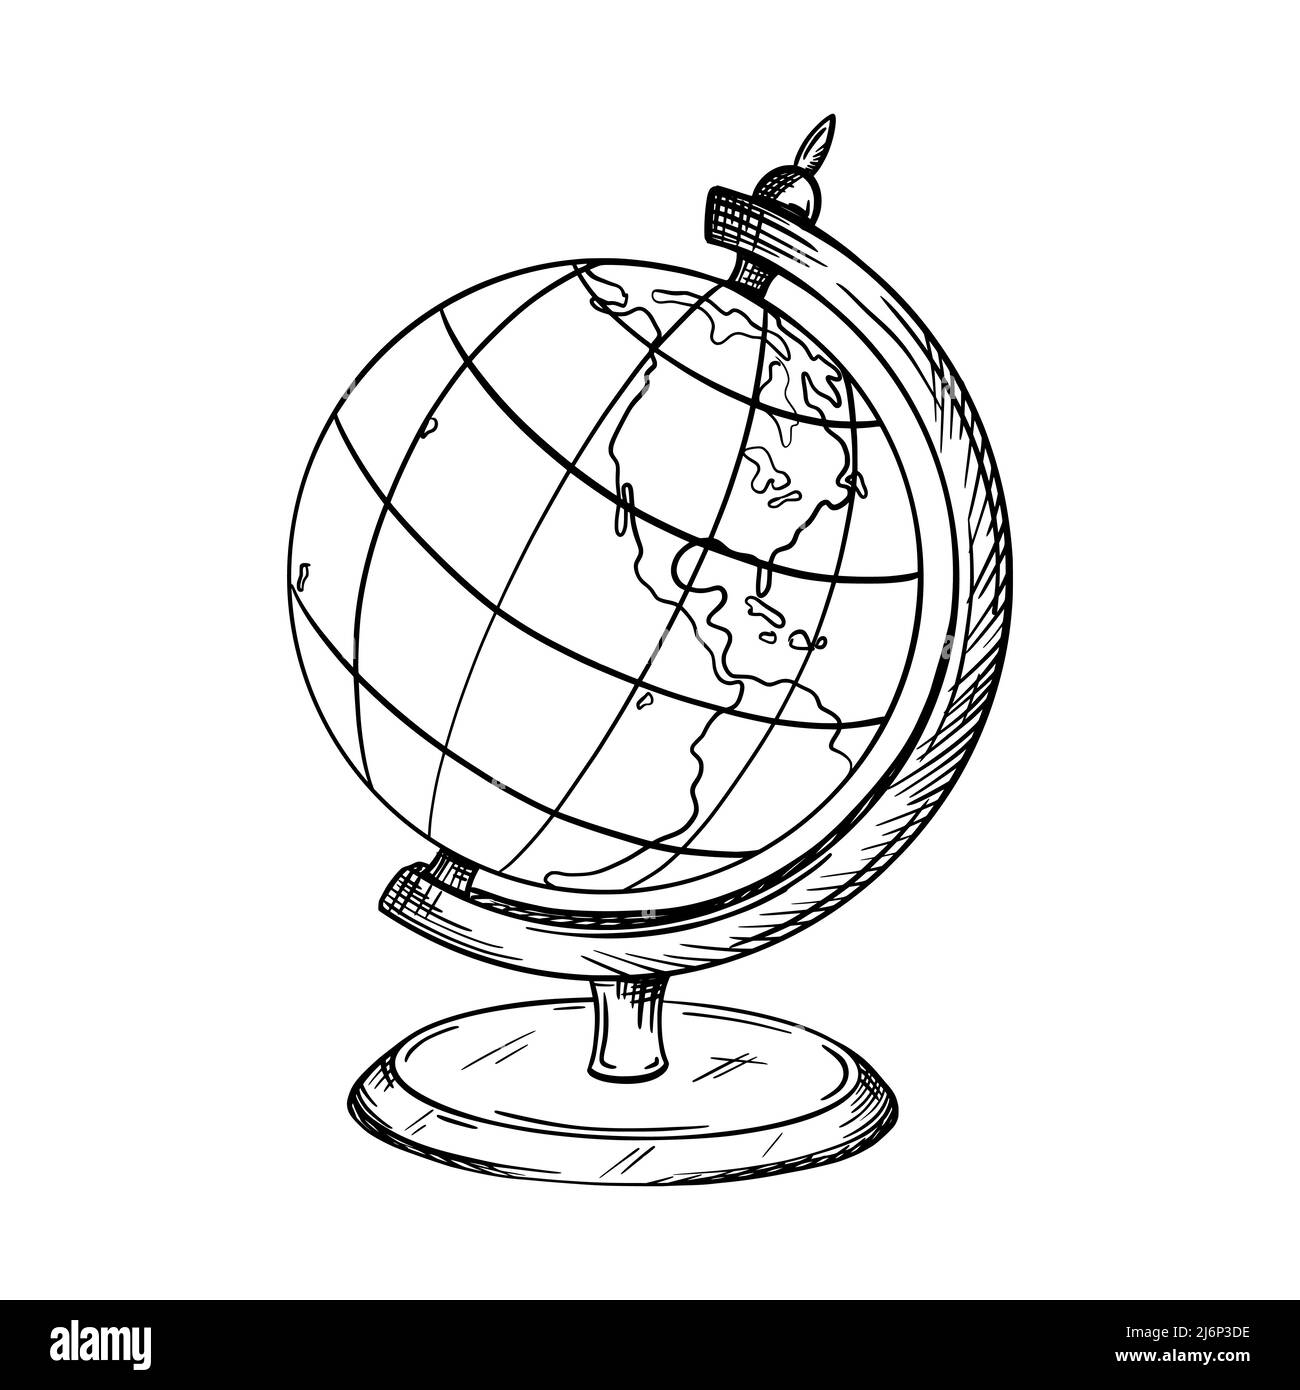 Schizzo di un globo scolastico su uno stand. La mappa mostra Sud e Nord America. Elemento per l'educazione e lo studio della geografia. Disegnato a mano e isolato Illustrazione Vettoriale